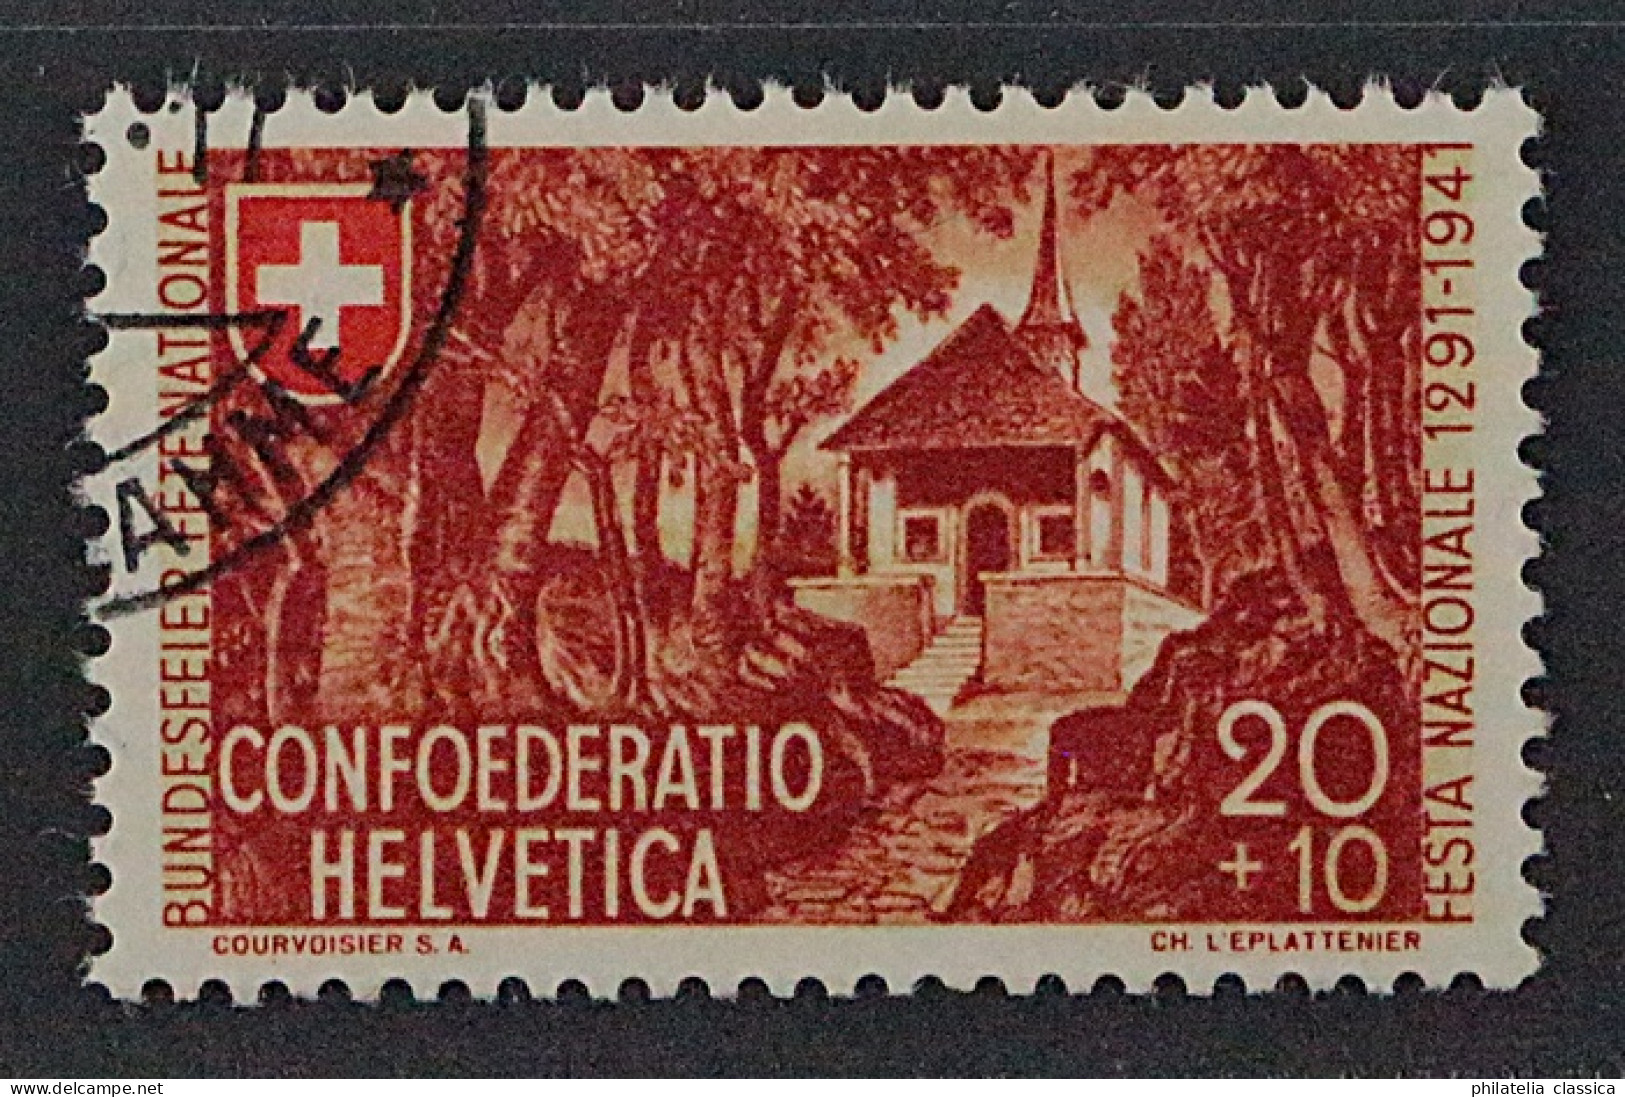 1941, SCHWEIZ 397 B, PATRIA 20 Rp. 2. Auflage, Sauber Gestempelt, Geprüft 120,-€ - Used Stamps